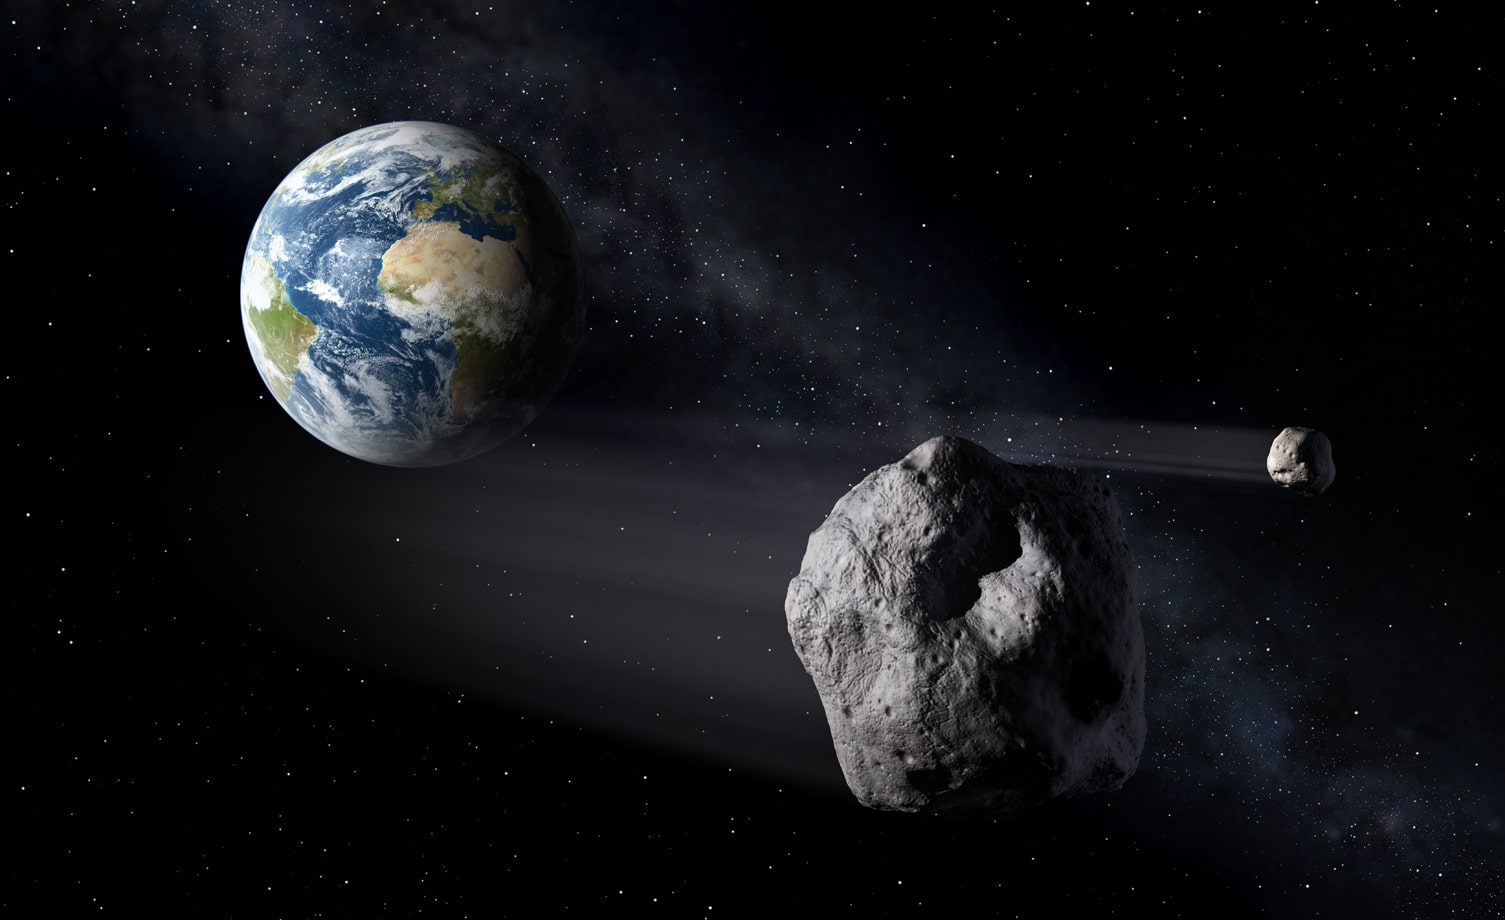 El asteroide 2002 AJ129 no va a chocar con la Tierra